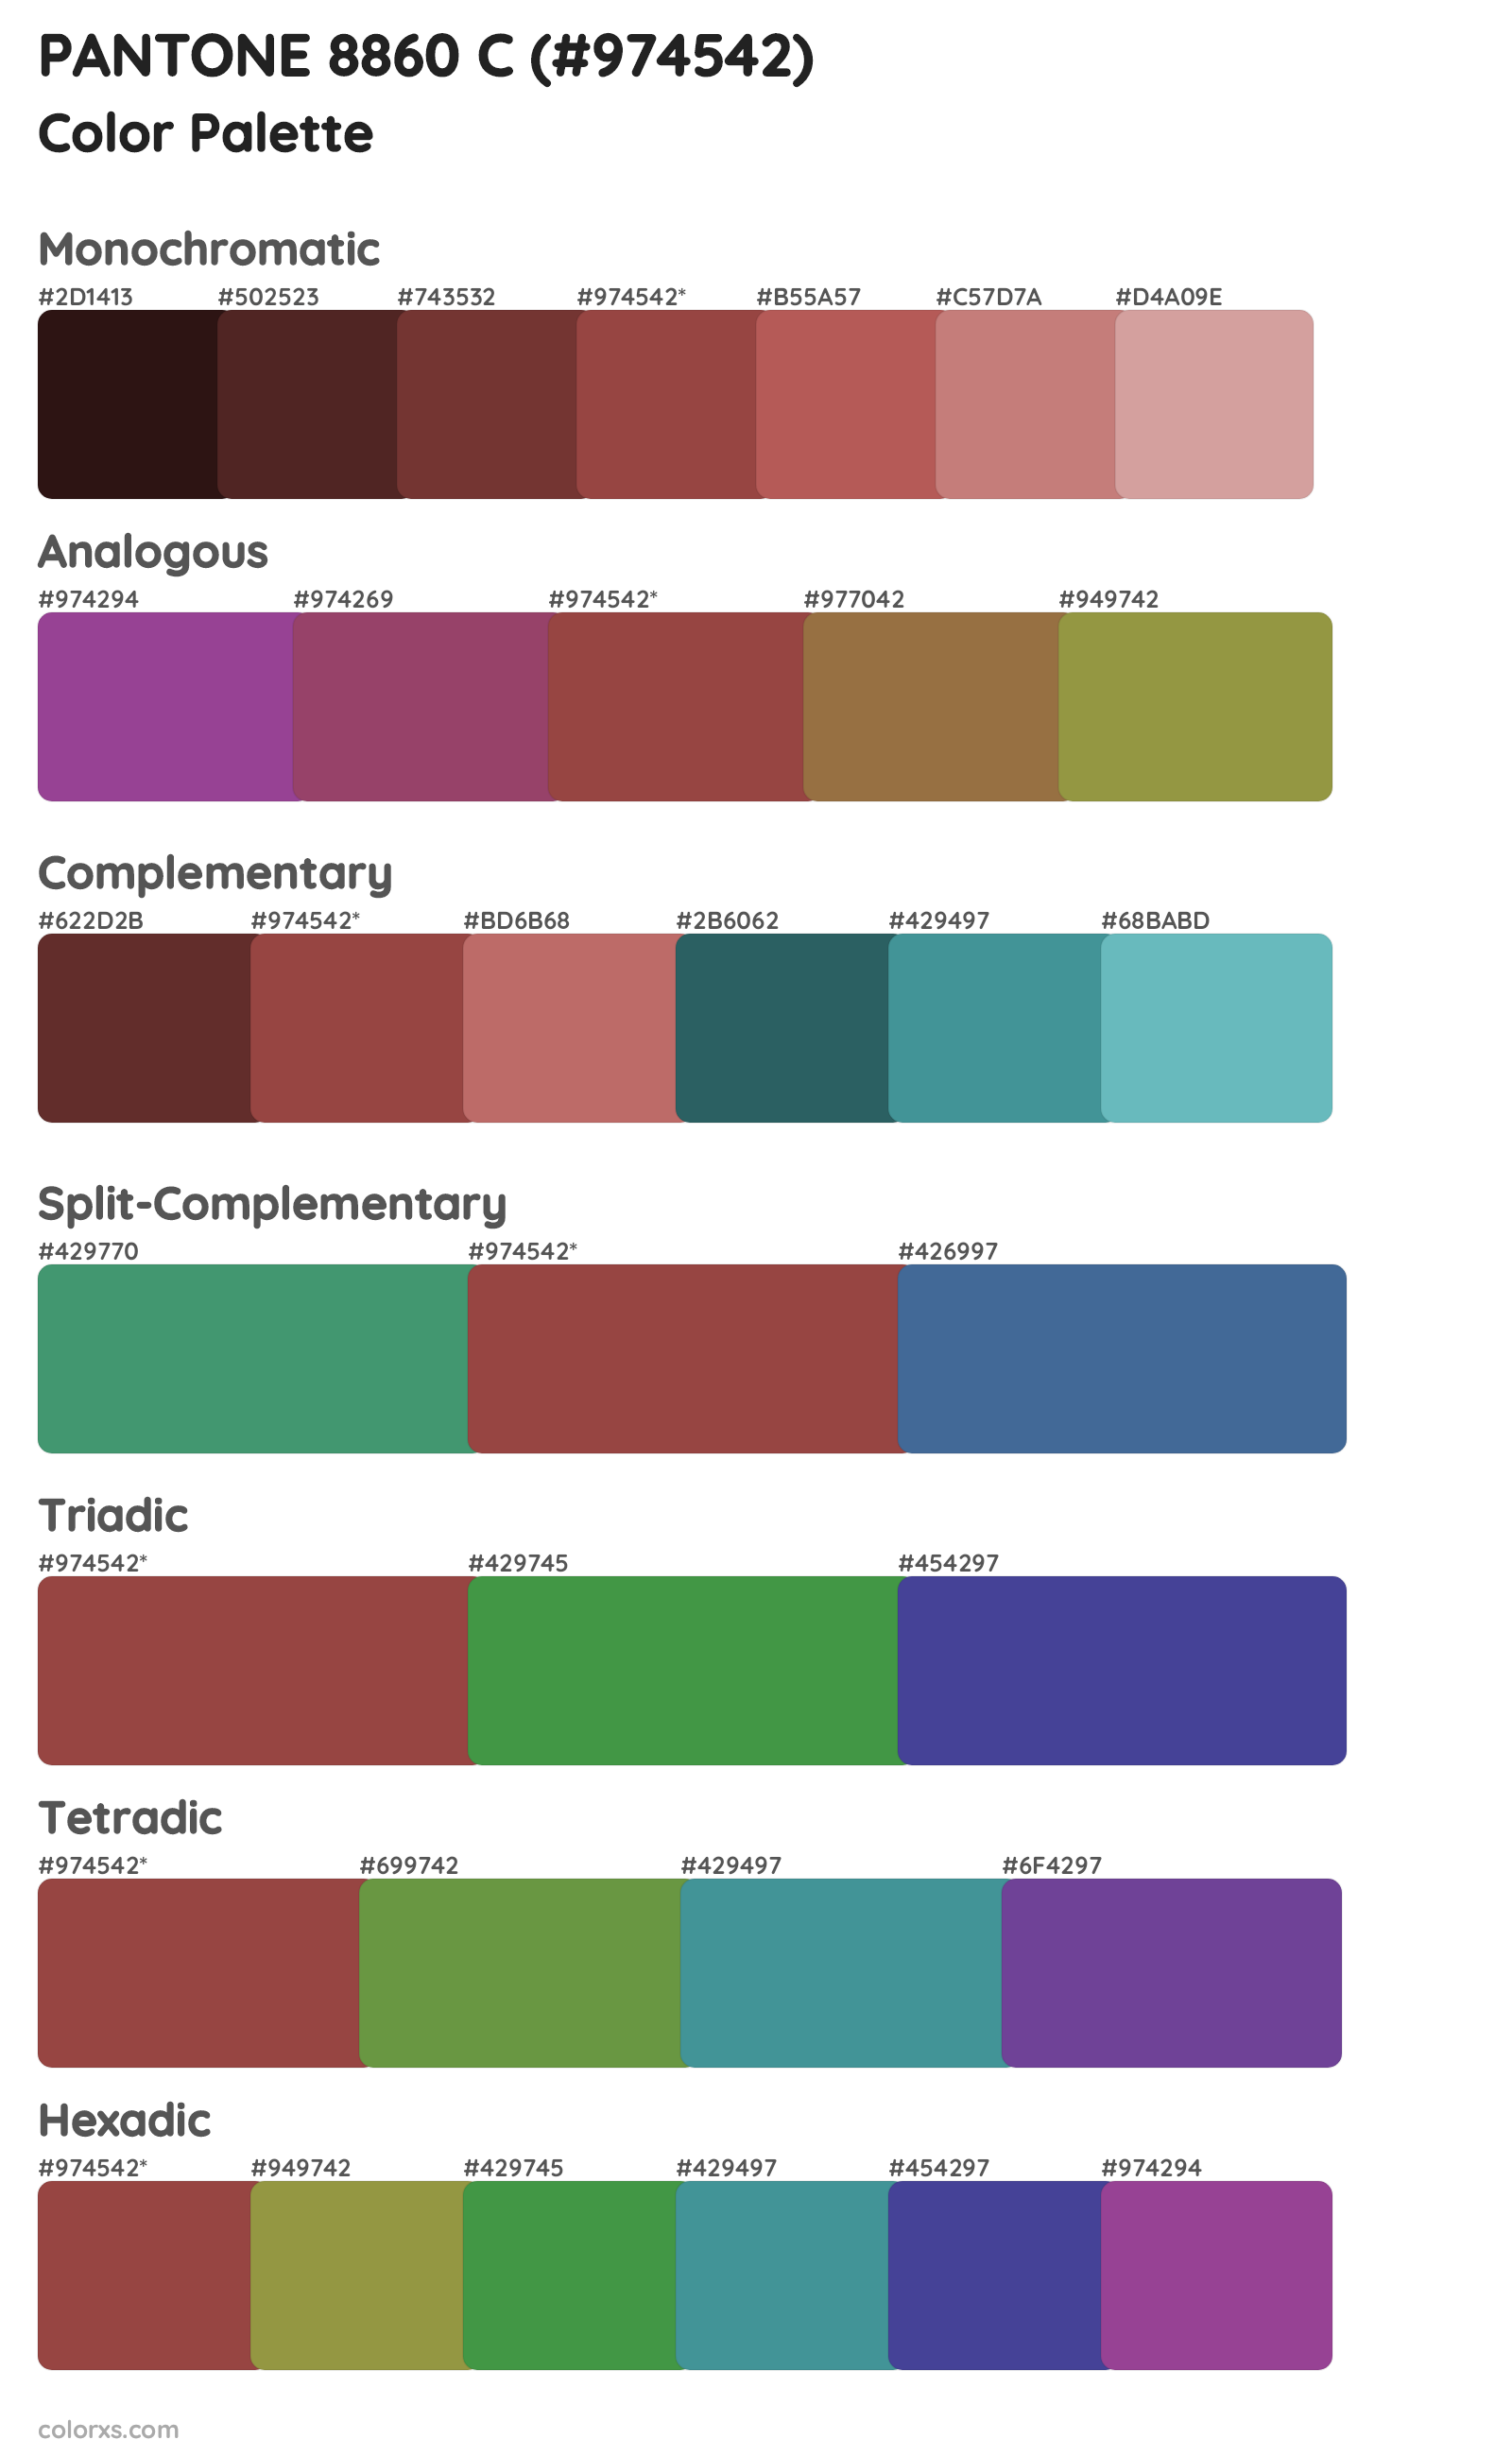 PANTONE 8860 C Color Scheme Palettes